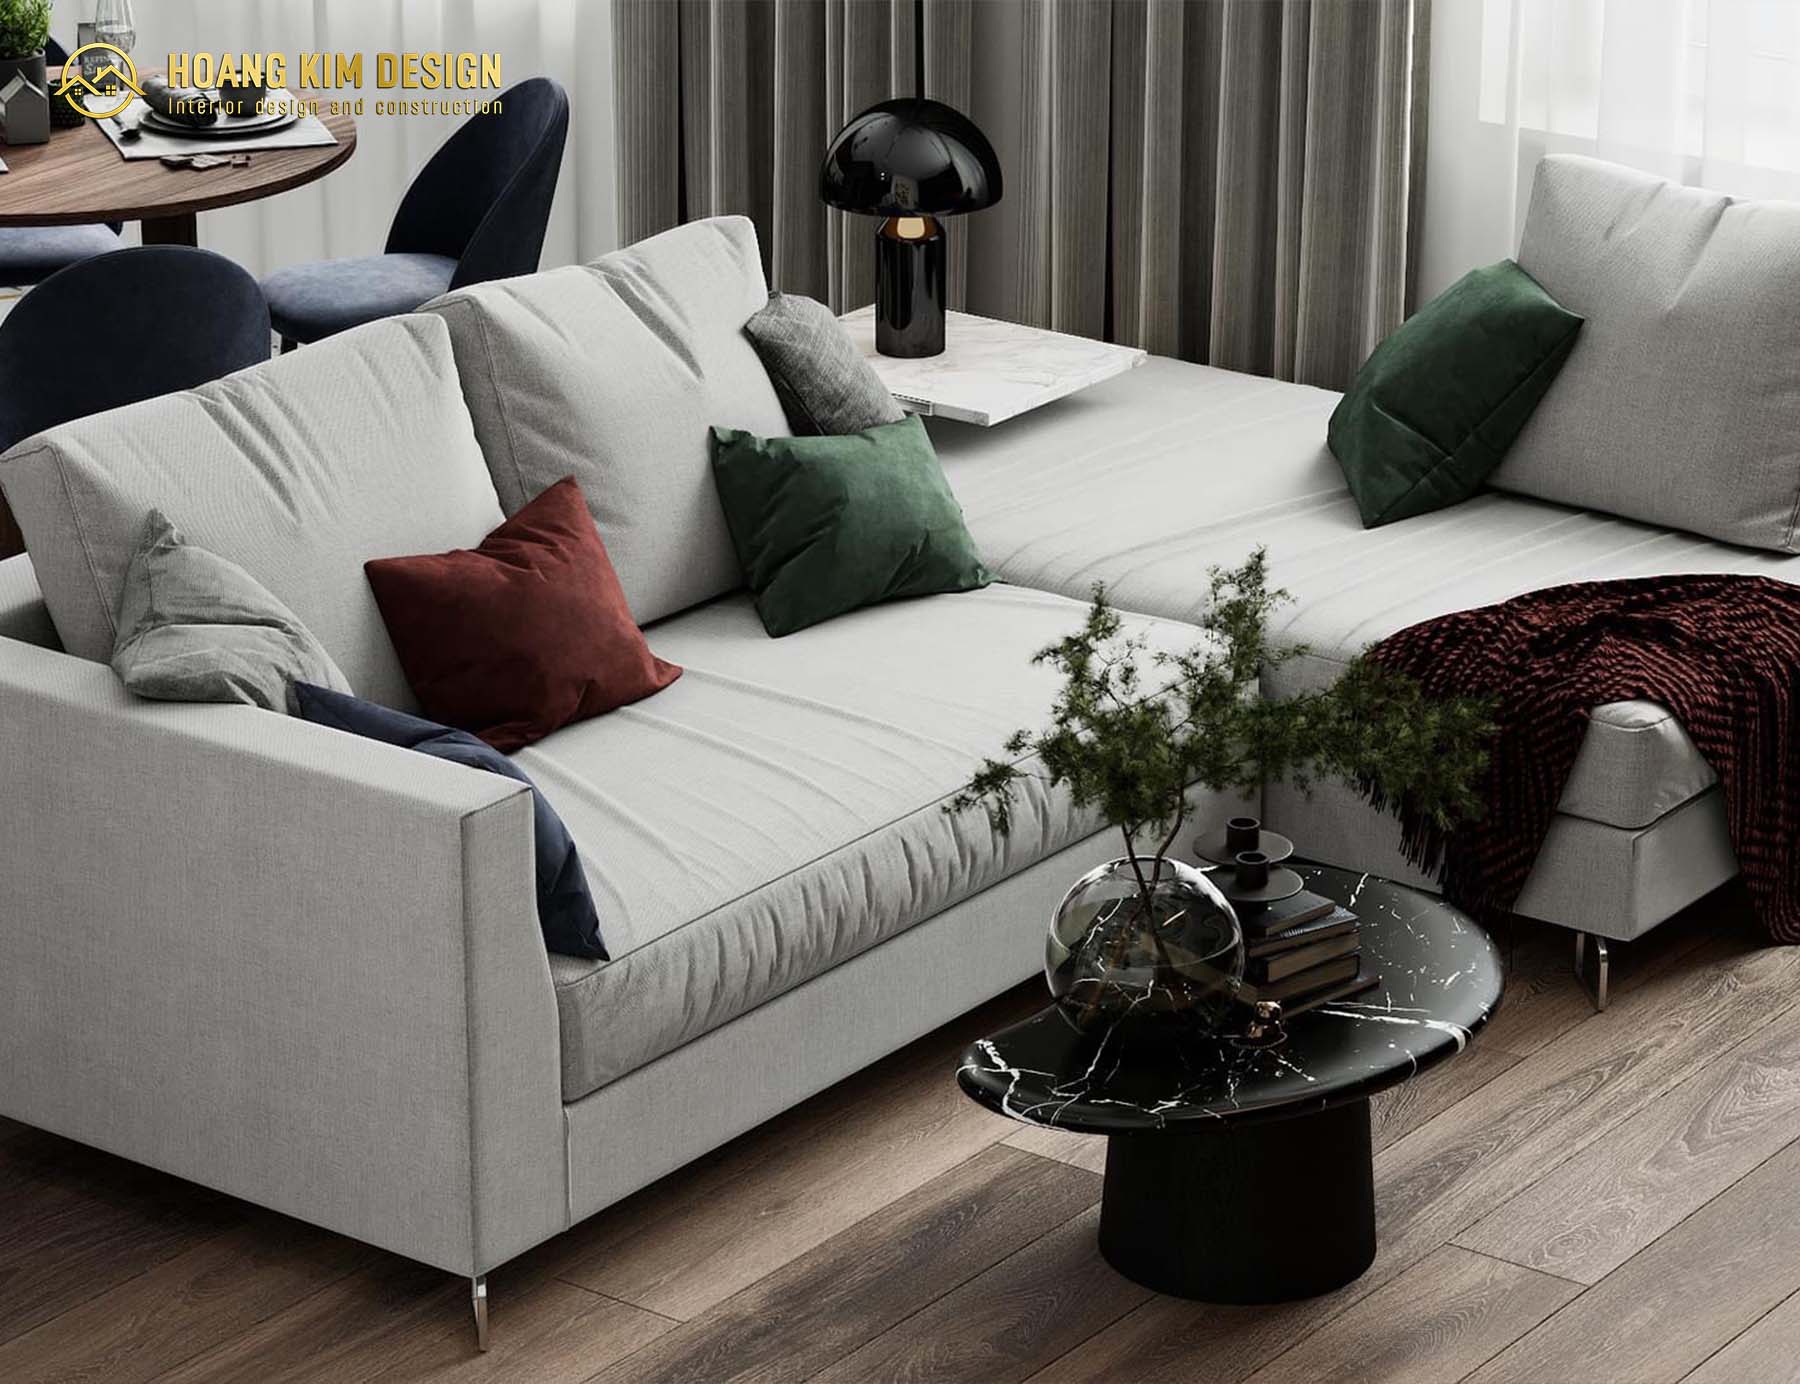 Bộ ghế sofa màu ghi nhạt nhã nhặn được bày giữa không gian